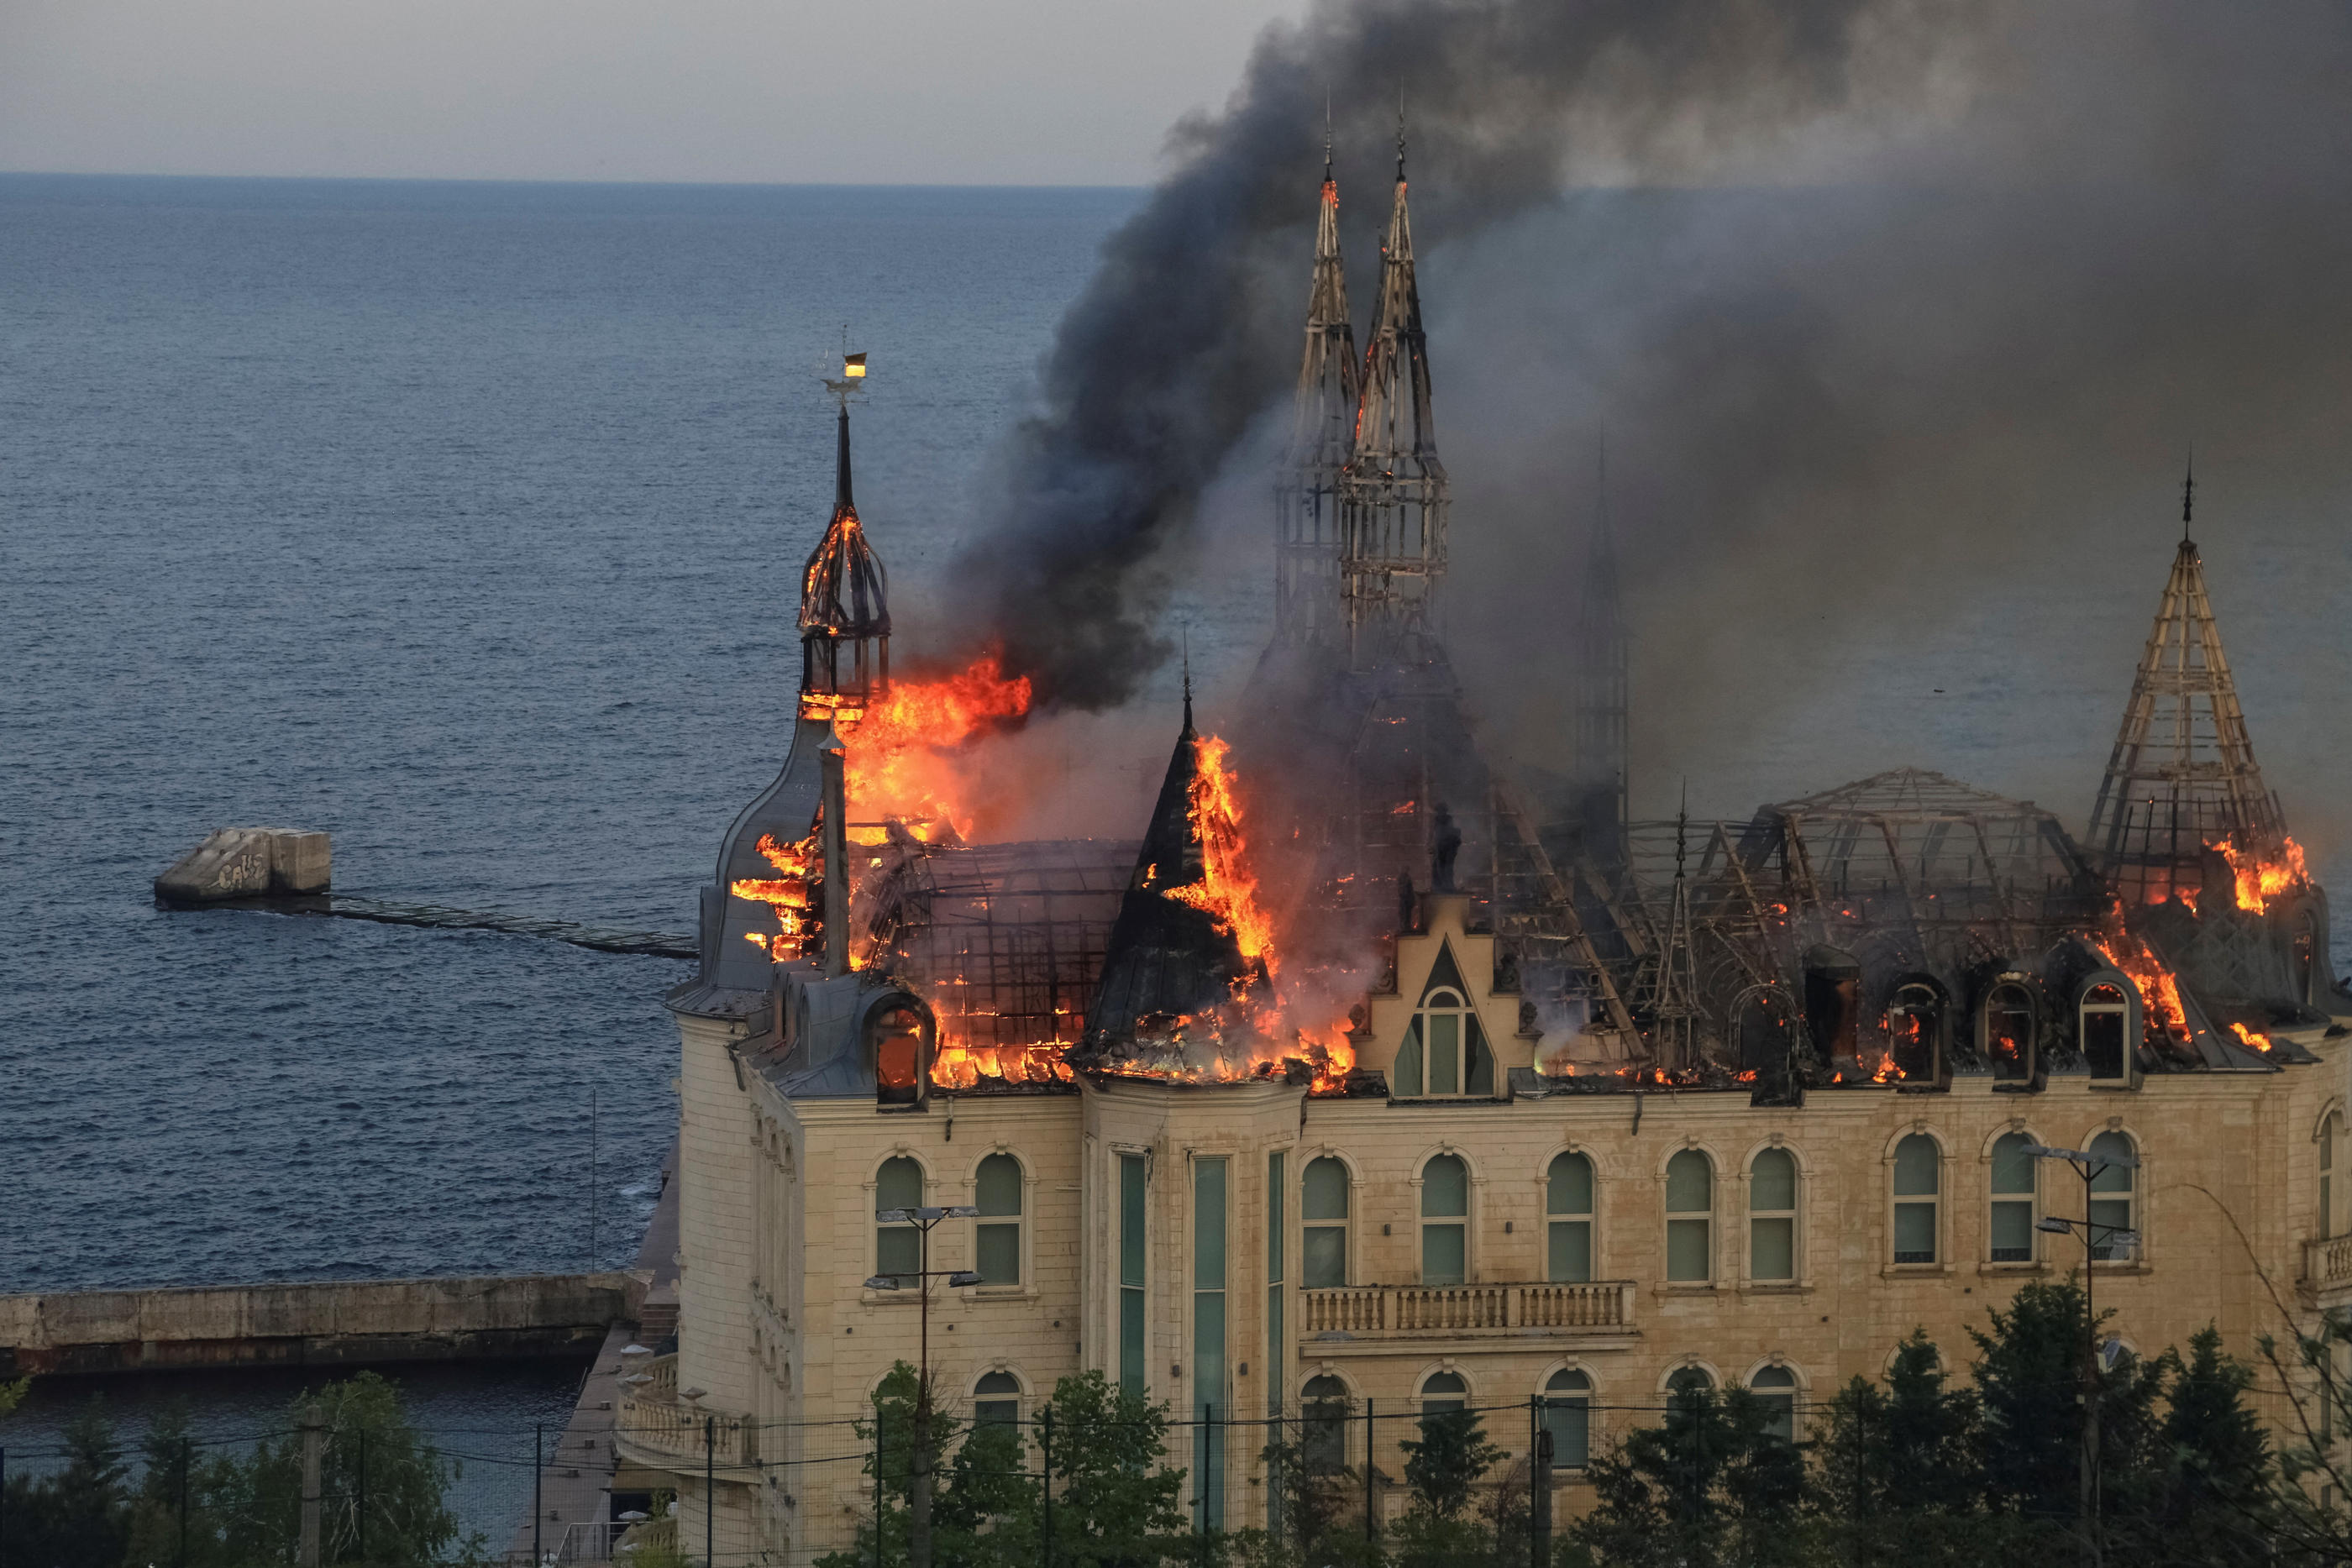 Un bâtiment en bord de mer appartenant à l’Académie juridique d’Odessa et réputé pour son architecture a pris feu. REUTERS/Sergey Smolentsev